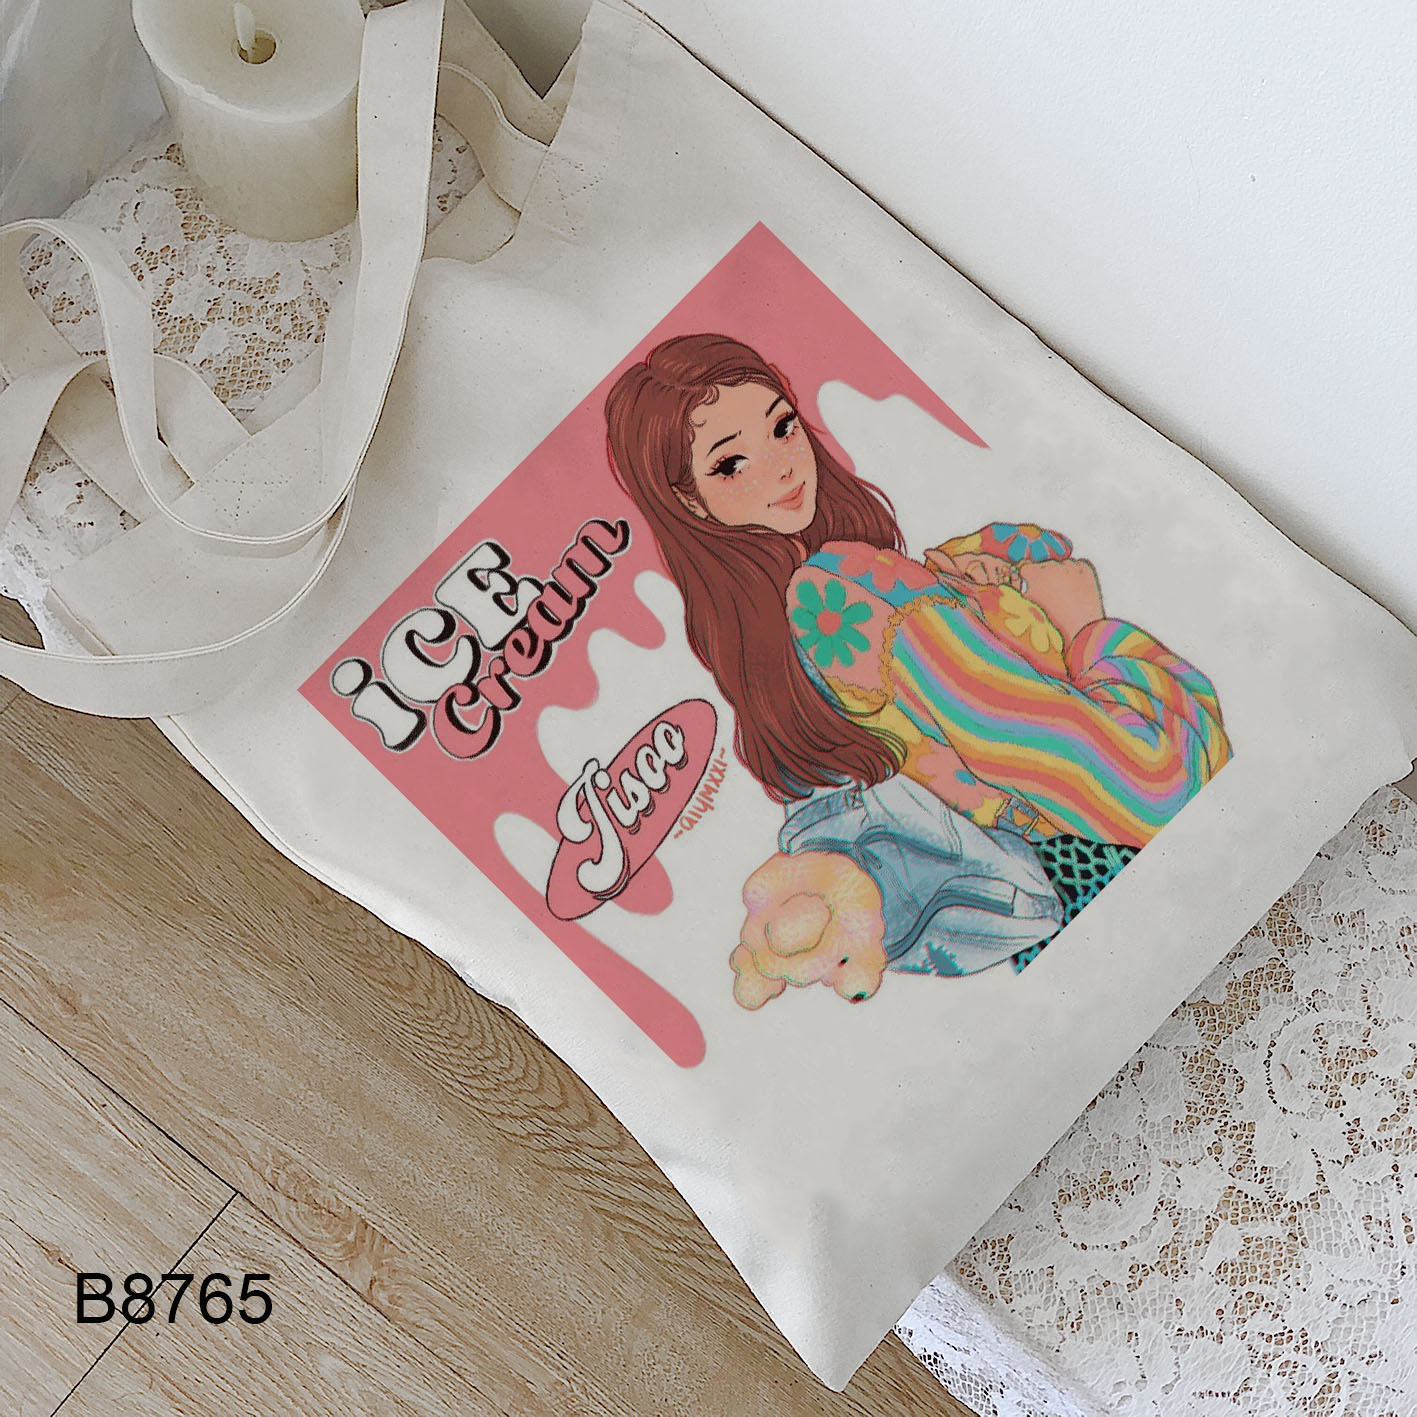 Túi xách họa tiết Blackpink ice cream chất liệu canvas dành cho học sinh nữ